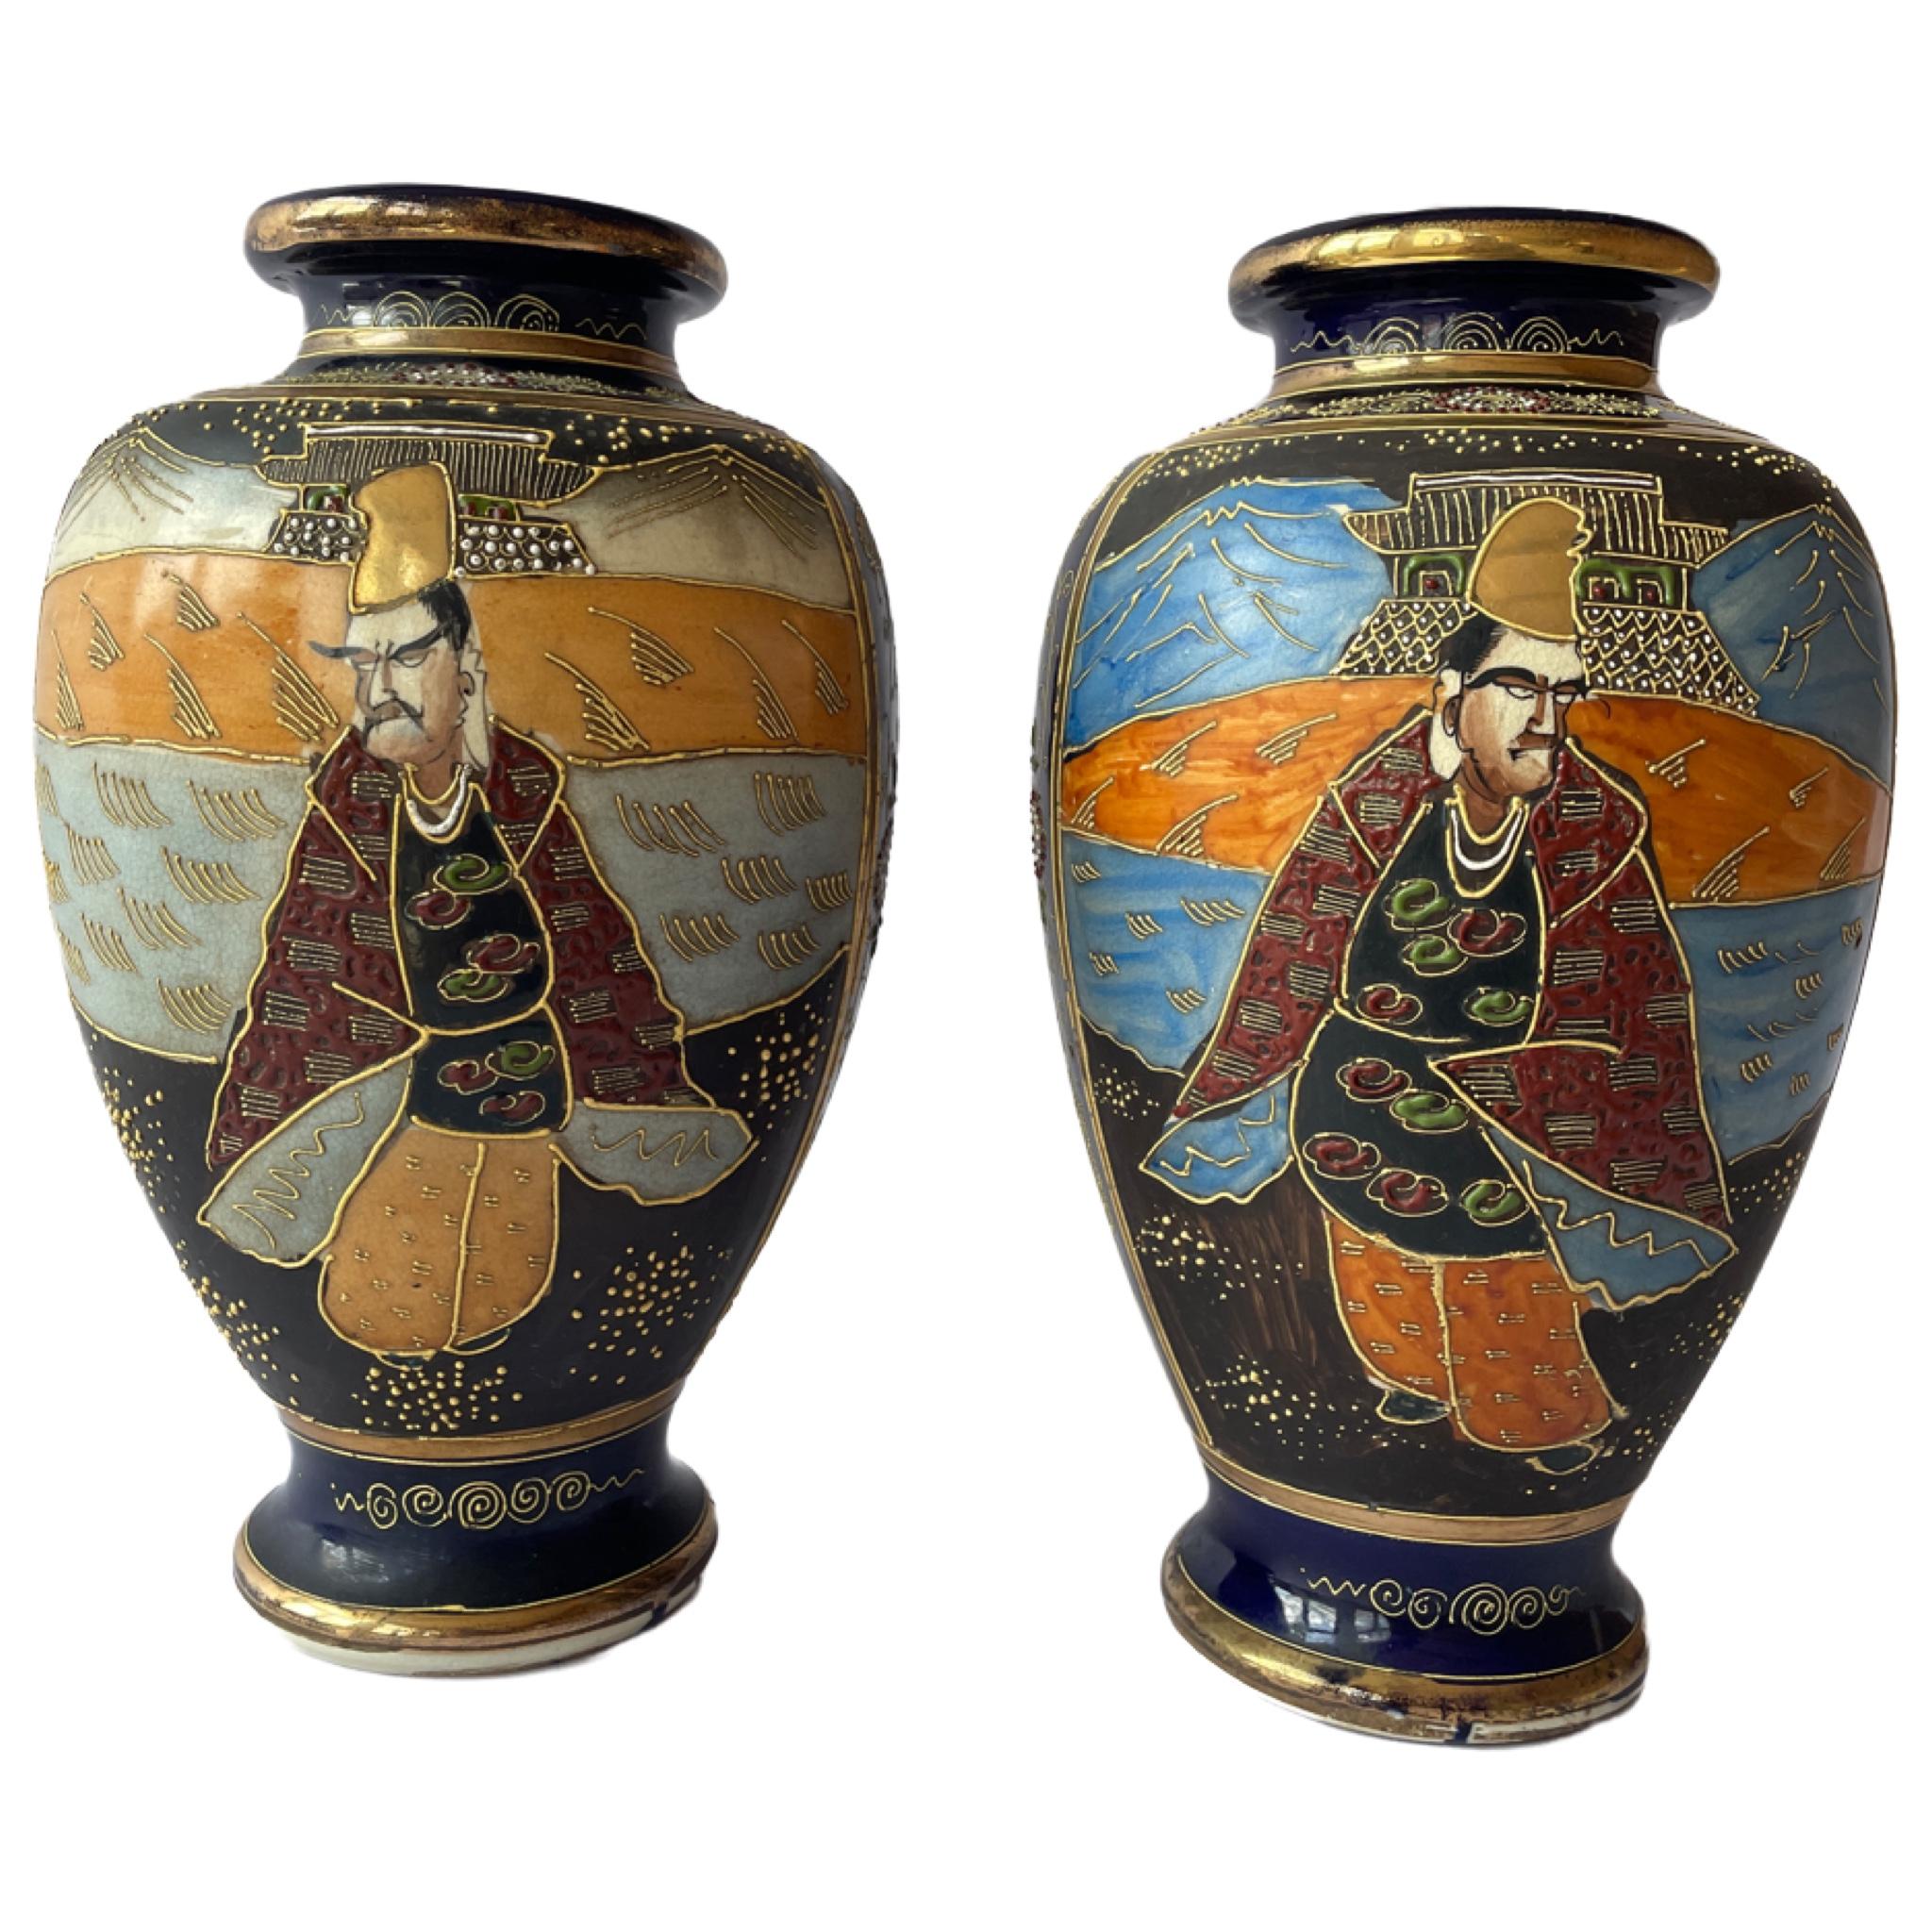 Japanische Satsuma-Vasen aus der Zeit um 1930-1940 sind ein besonderer Stil der Keramikkunst, der seinen Ursprung in der japanischen Provinz Satsuma hat. Satsuma-Ware ist bekannt für ihre komplizierten, handgemalten Muster, die satten Farben und die